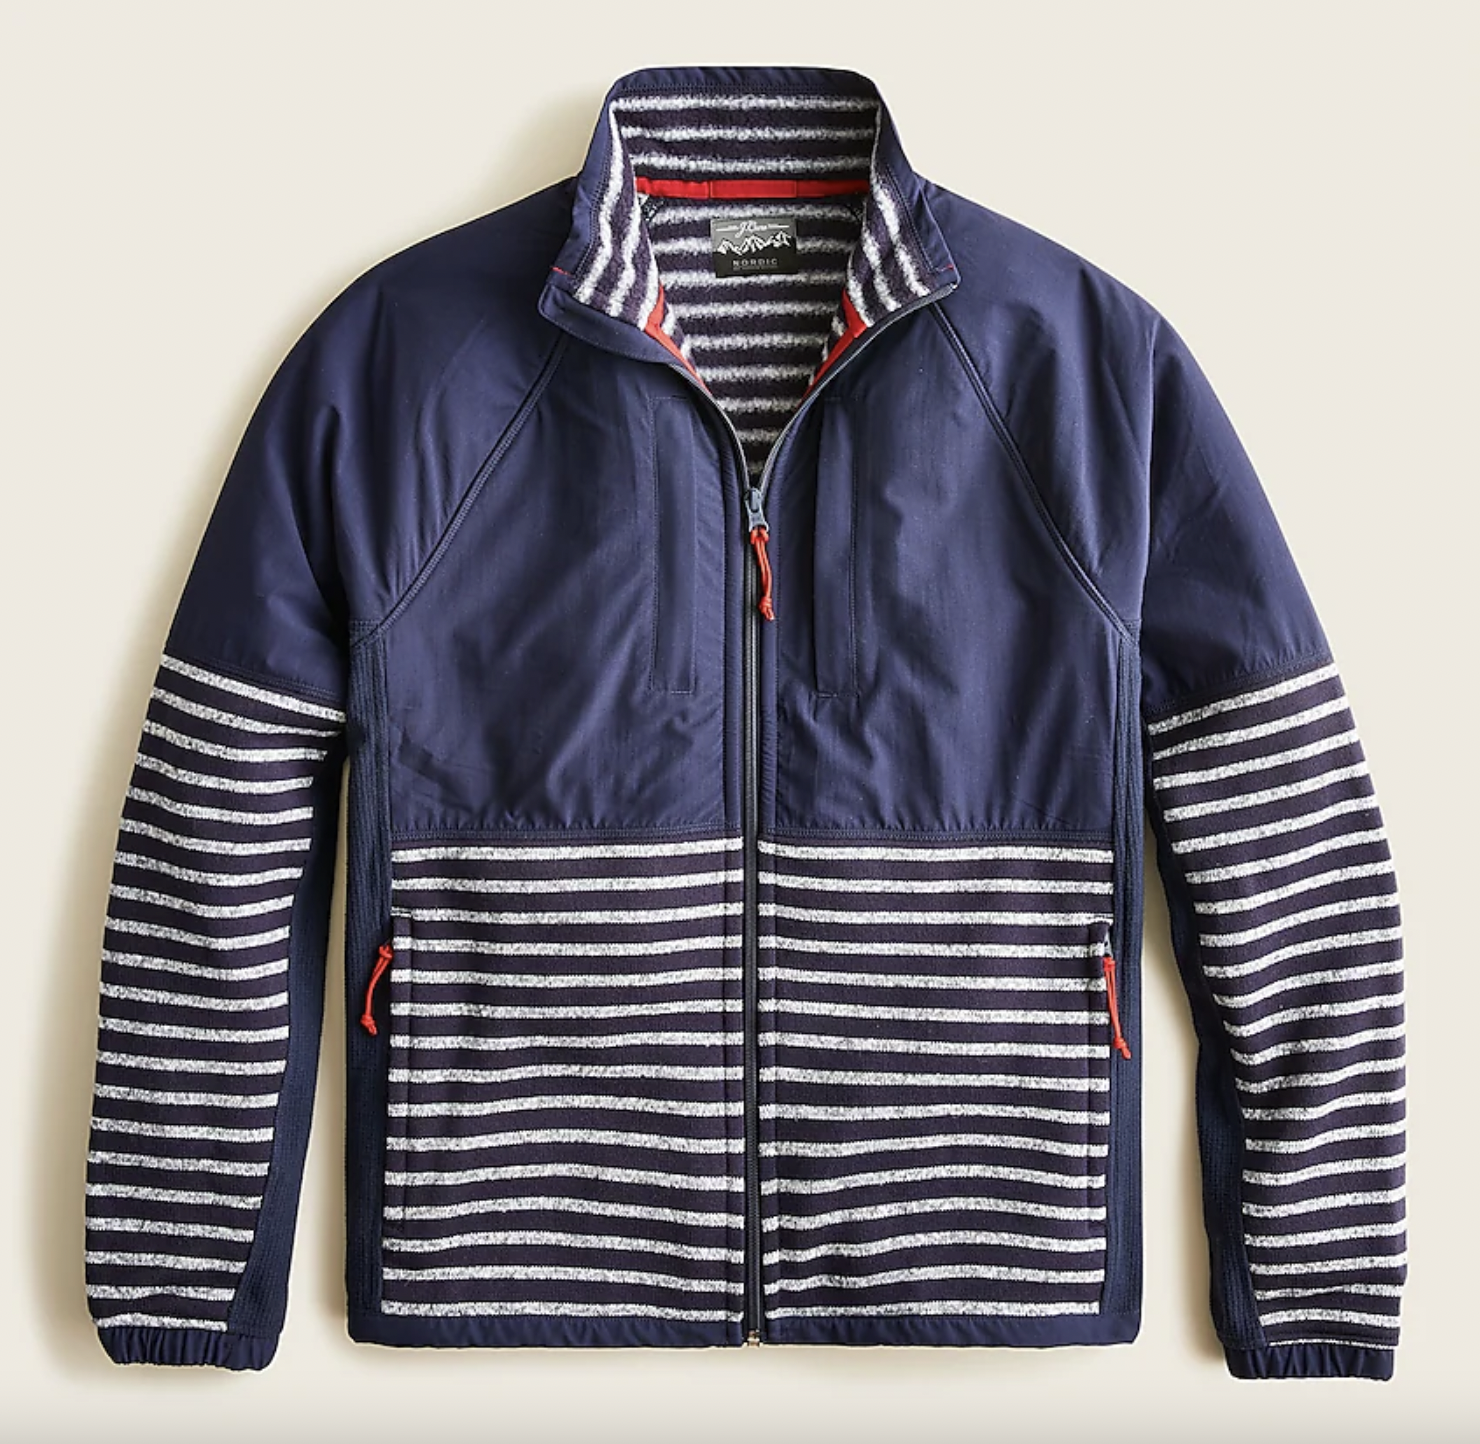 Full-zip sweater fleece jacket in stripe